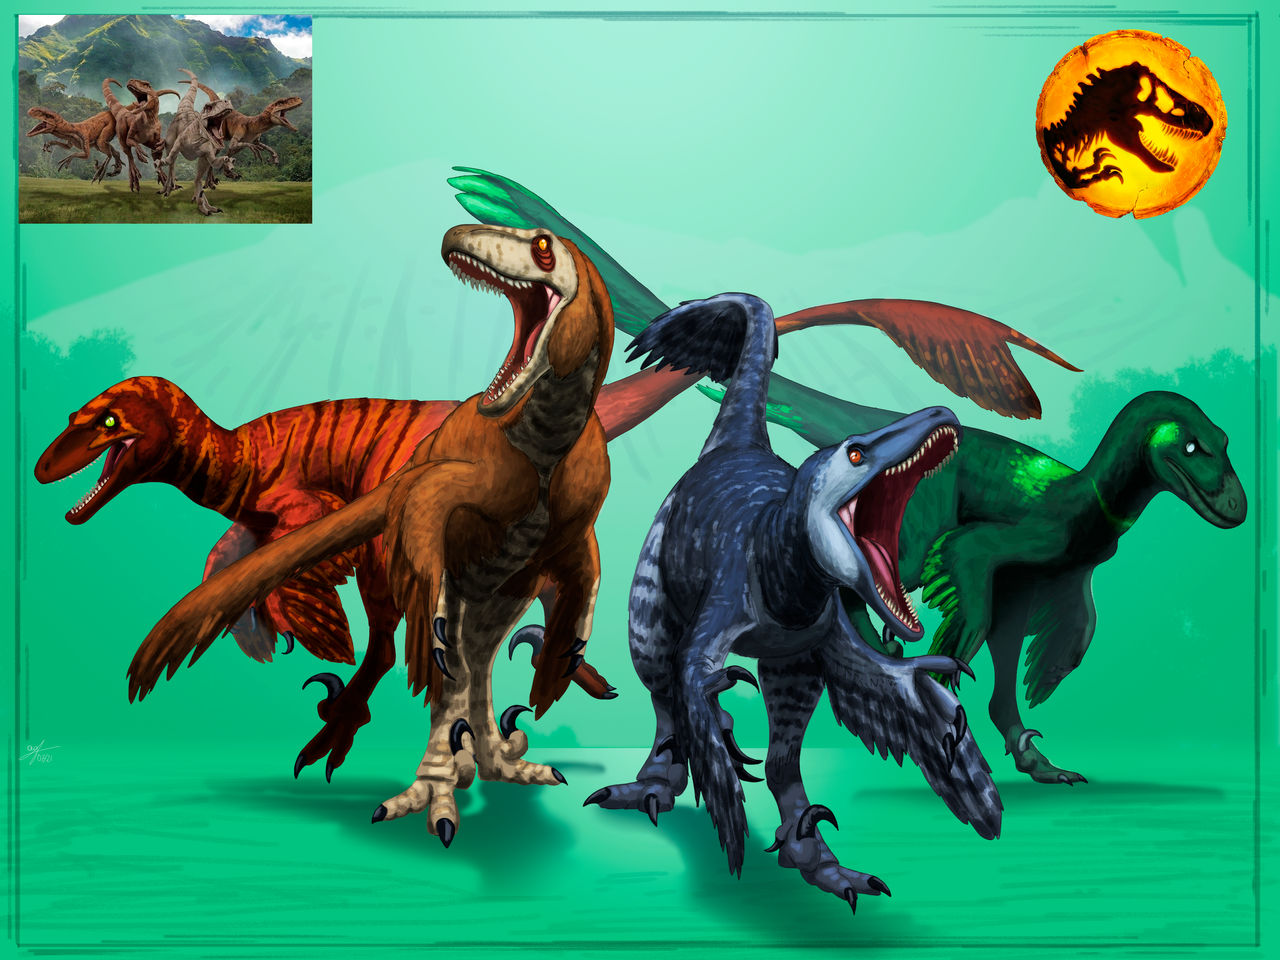 jurassic_world_dominion_atrociraptor_pack_remake_by_allotyrannosaurus_deq1snt-fullview.jpg?token=eyJ0eXAiOiJKV1QiLCJhbGciOiJIUzI1NiJ9.eyJzdWIiOiJ1cm46YXBwOjdlMGQxODg5ODIyNjQzNzNhNWYwZDQxNWVhMGQyNmUwIiwiaXNzIjoidXJuOmFwcDo3ZTBkMTg4OTgyMjY0MzczYTVmMGQ0MTVlYTBkMjZlMCIsIm9iaiI6W1t7ImhlaWdodCI6Ijw9OTYwIiwicGF0aCI6IlwvZlwvNmE2ZmYwYWYtMDdhNC00OTY5LWEzNjItMTJiMGEzNzUwM2UzXC9kZXExc250LTM4MzQ2YmE2LTE3YmQtNGY3OC05ZDQ1LThjZmQ0YWFiZThhNC5wbmciLCJ3aWR0aCI6Ijw9MTI4MCJ9XV0sImF1ZCI6WyJ1cm46c2VydmljZTppbWFnZS5vcGVyYXRpb25zIl19.tO5i7f-dkPwRXVhFs6da8_hXkBTS5sTuzoyuxr41Fcc